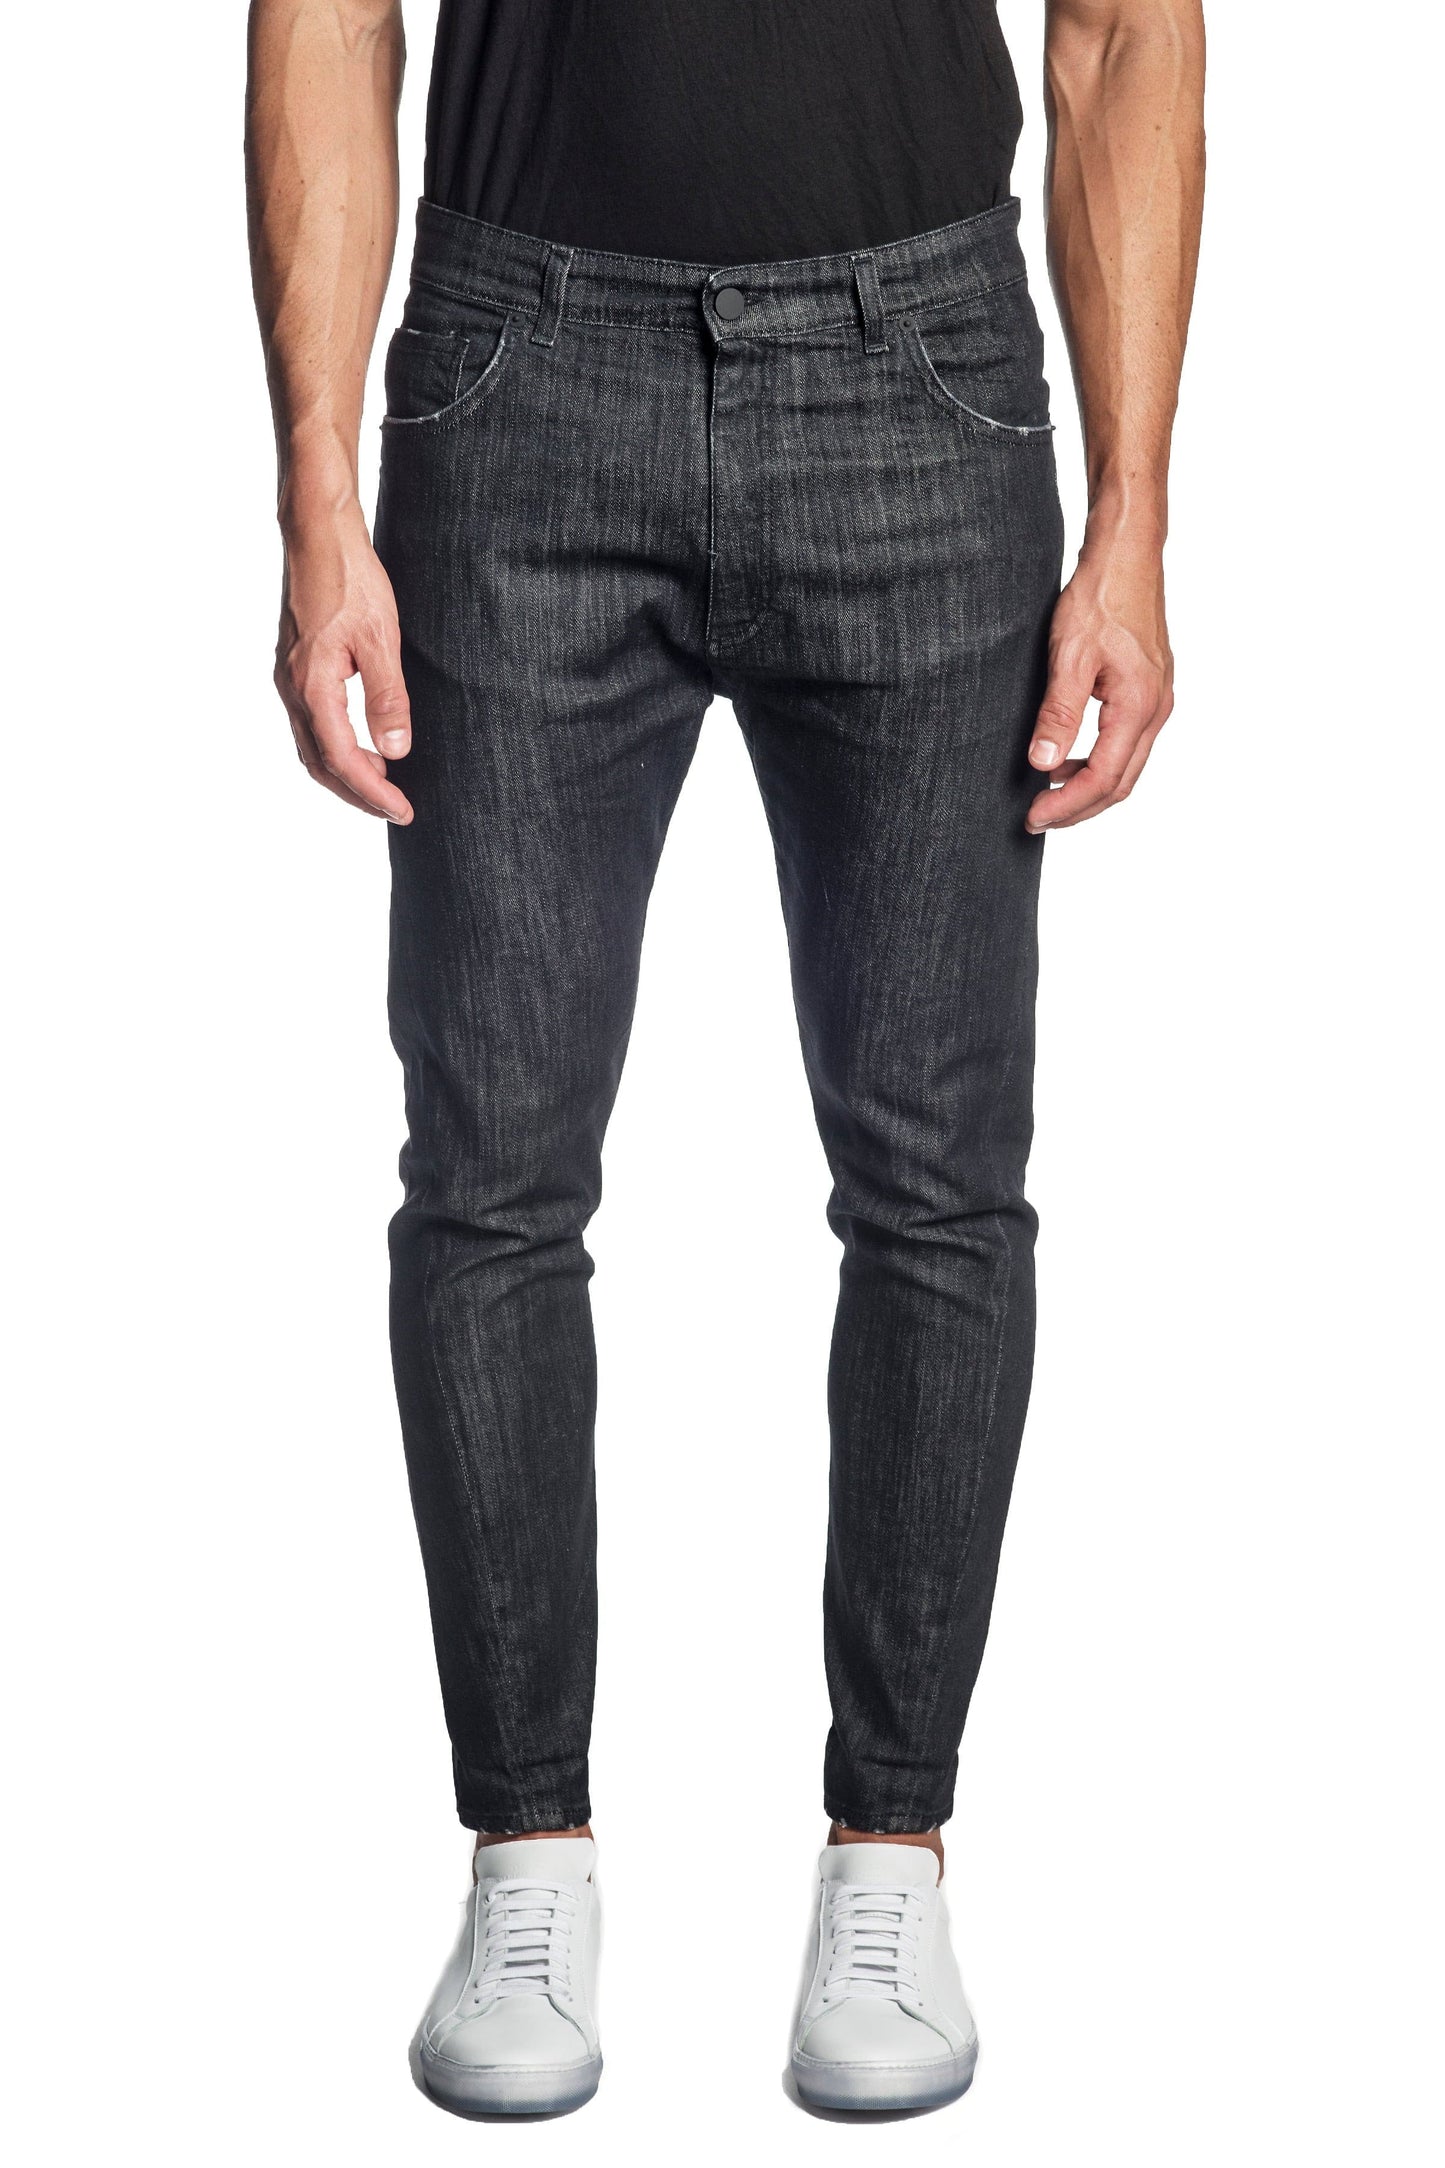 Black Skinny Denim Jeans for Men JN-828.